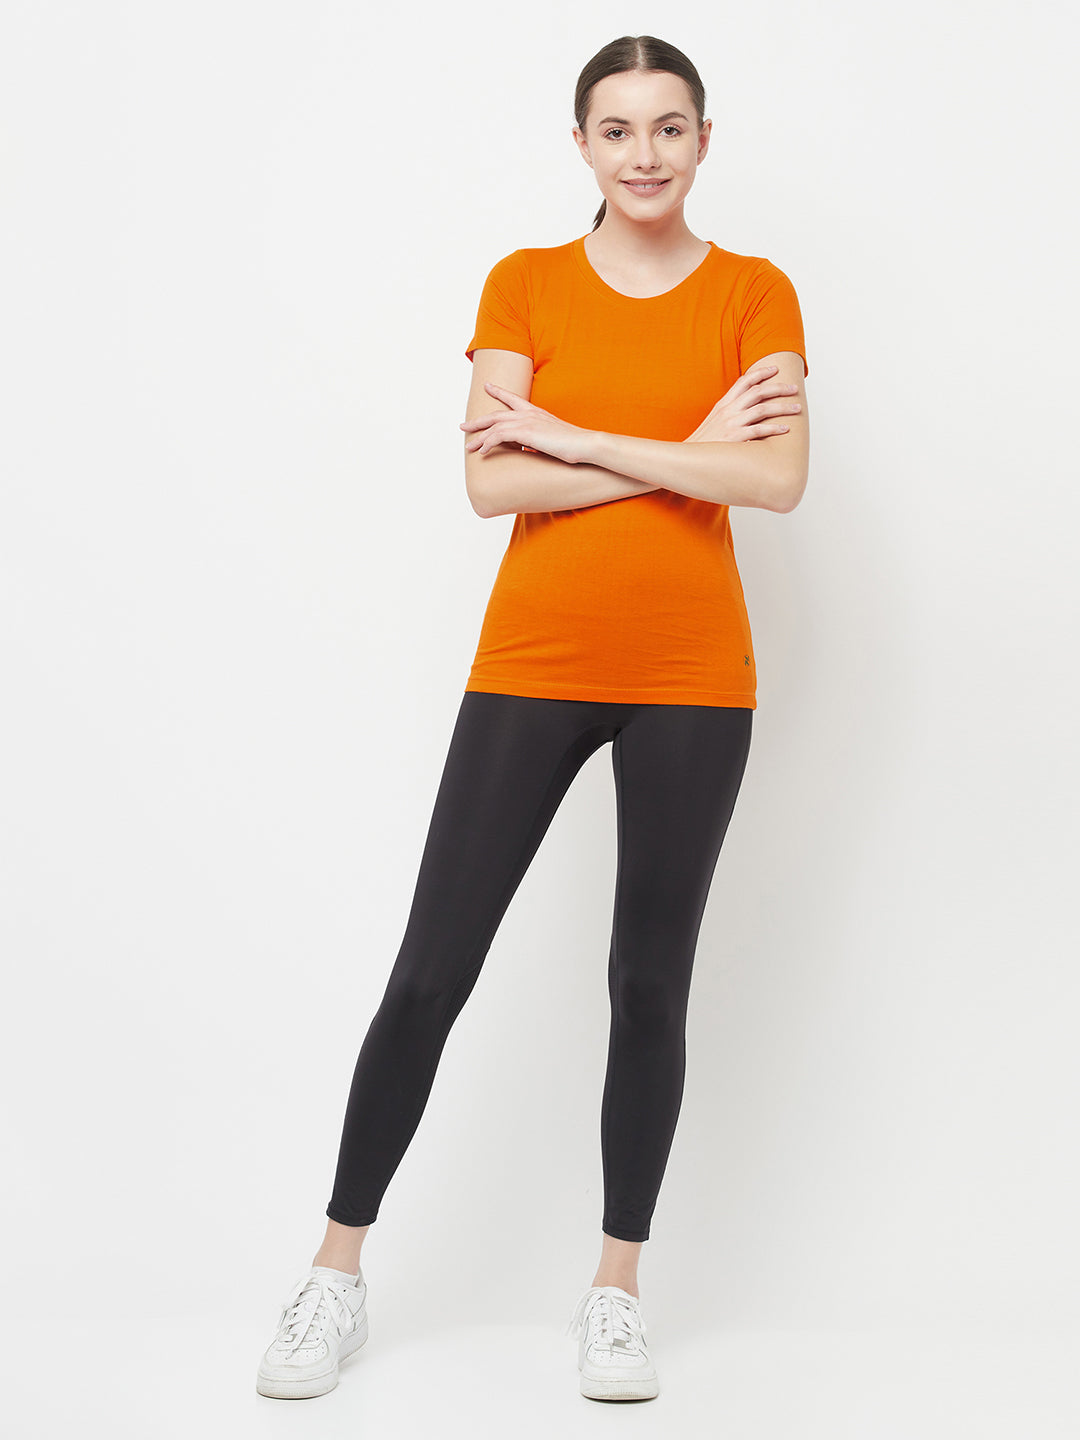 Slim Fit Premium Cotton Tshirts (Pack of 2- Orange, Orange)